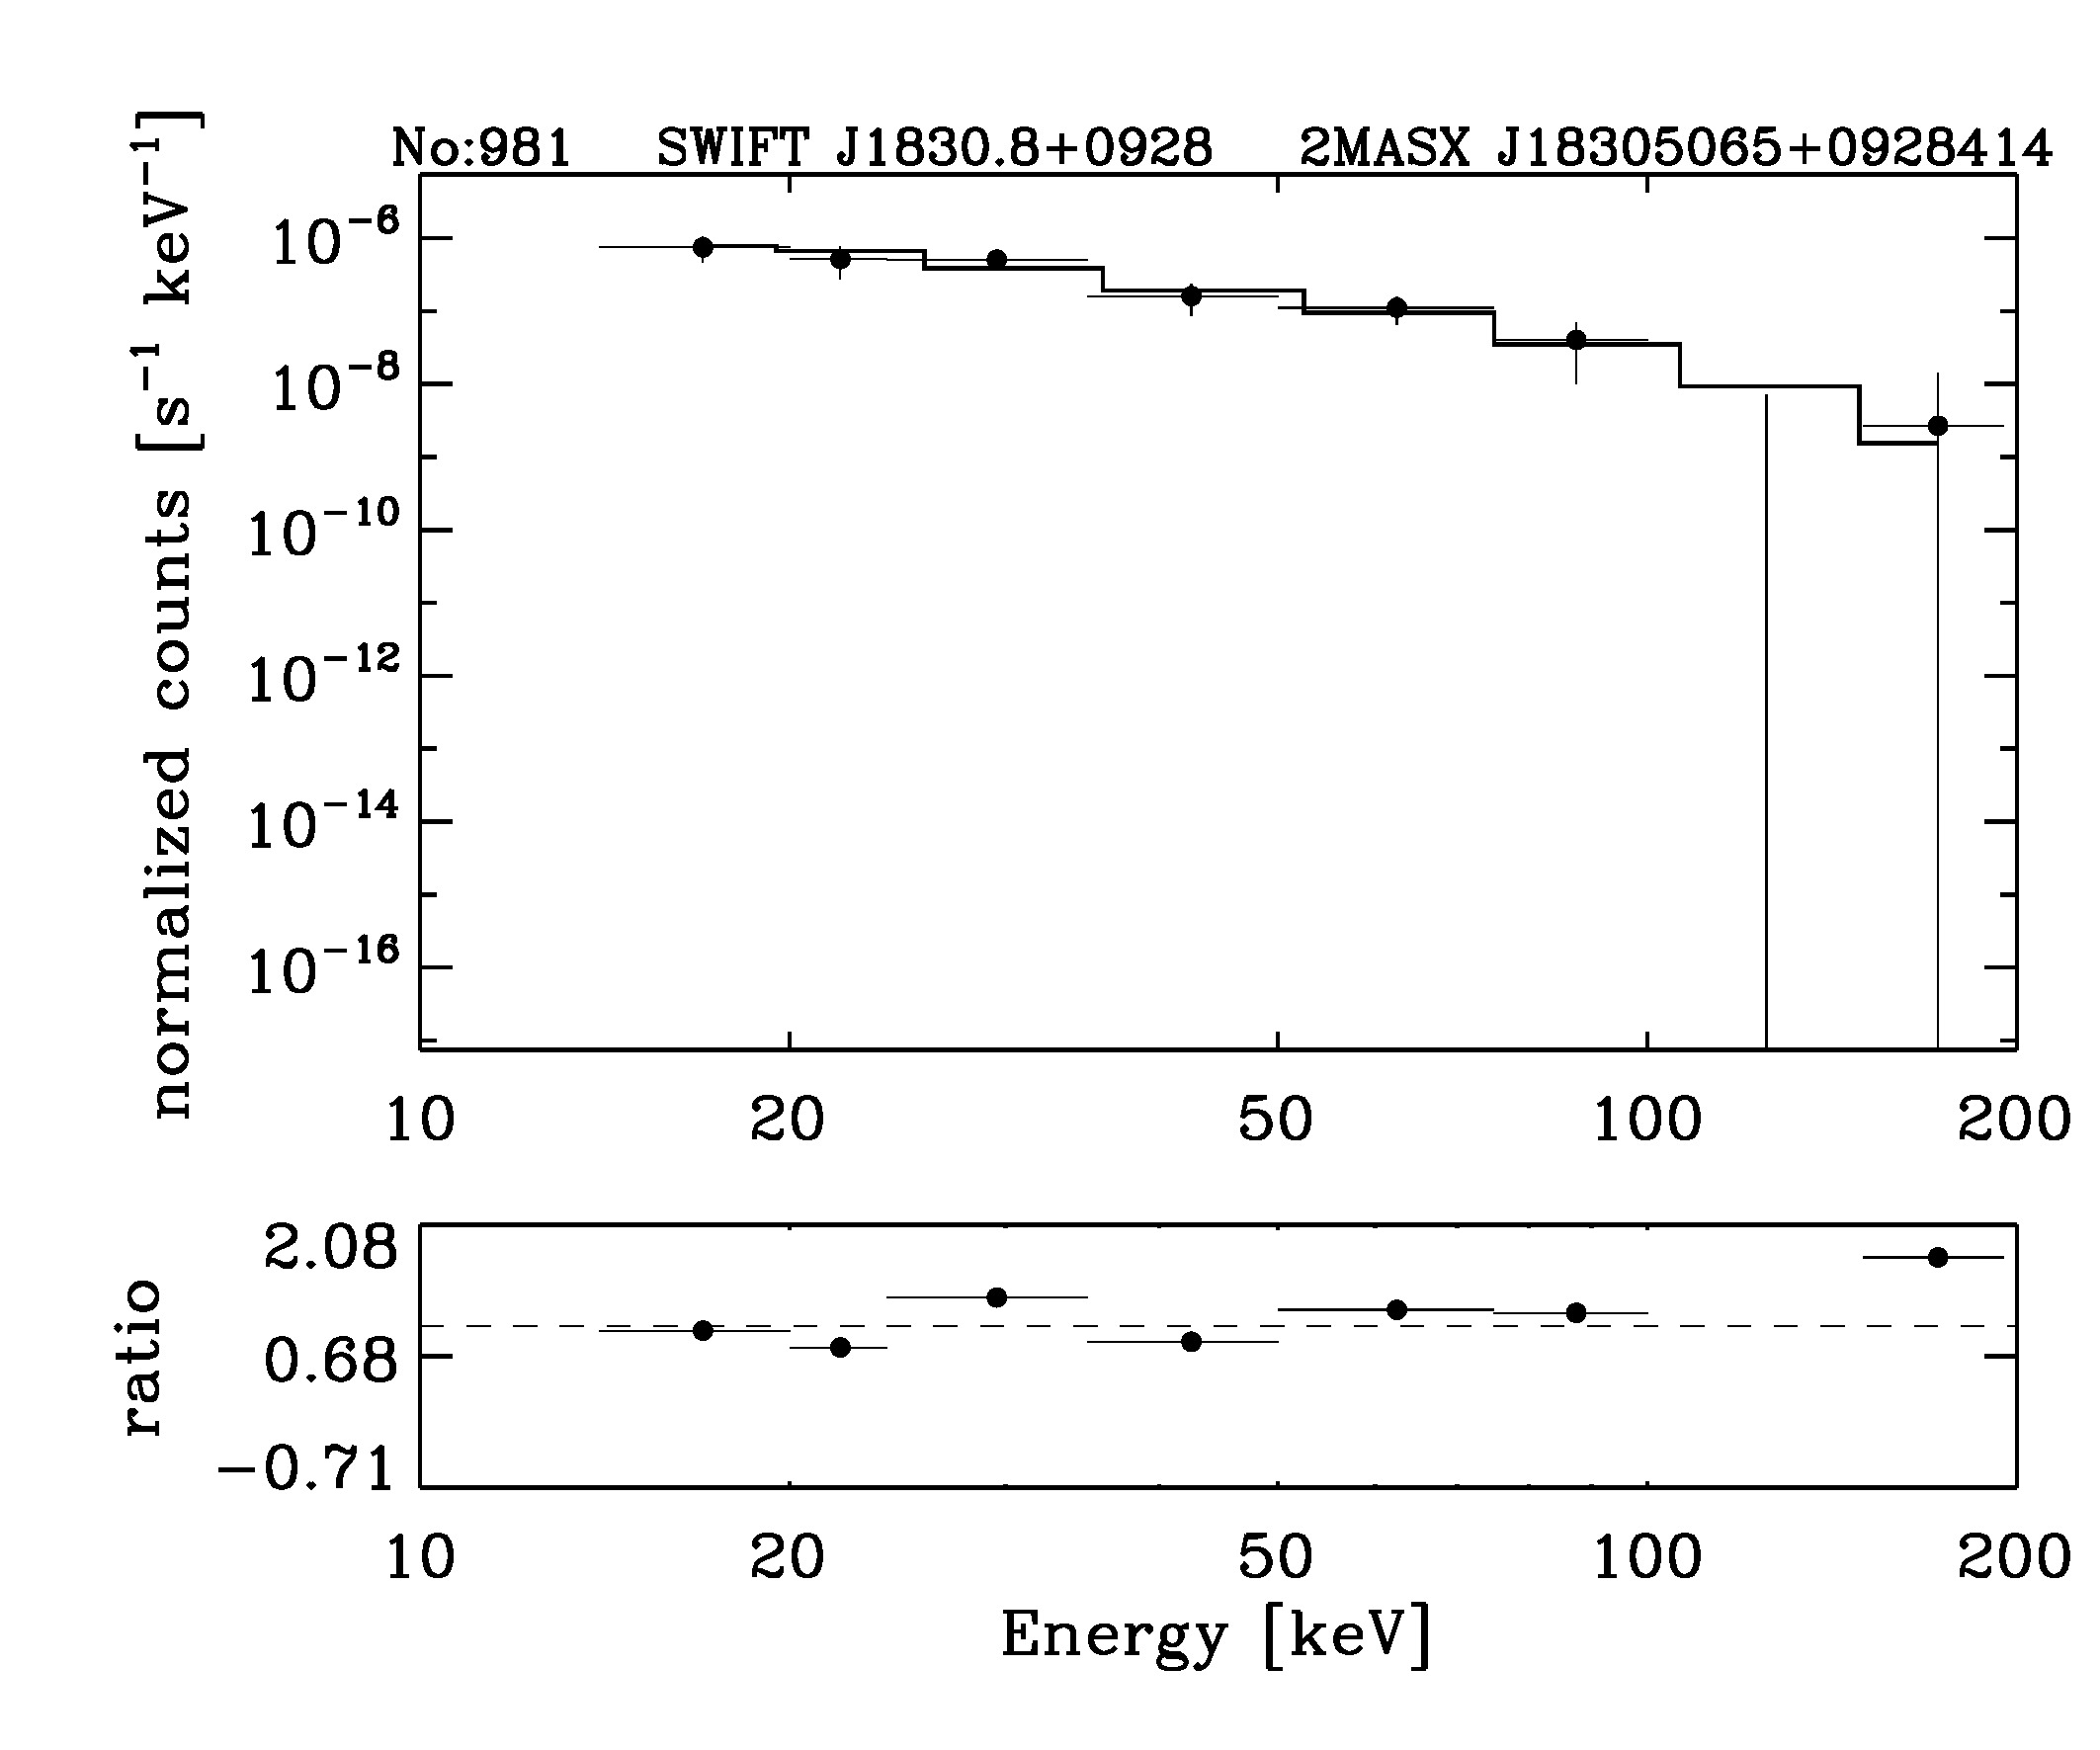 BAT Spectrum for SWIFT J1830.8+0928